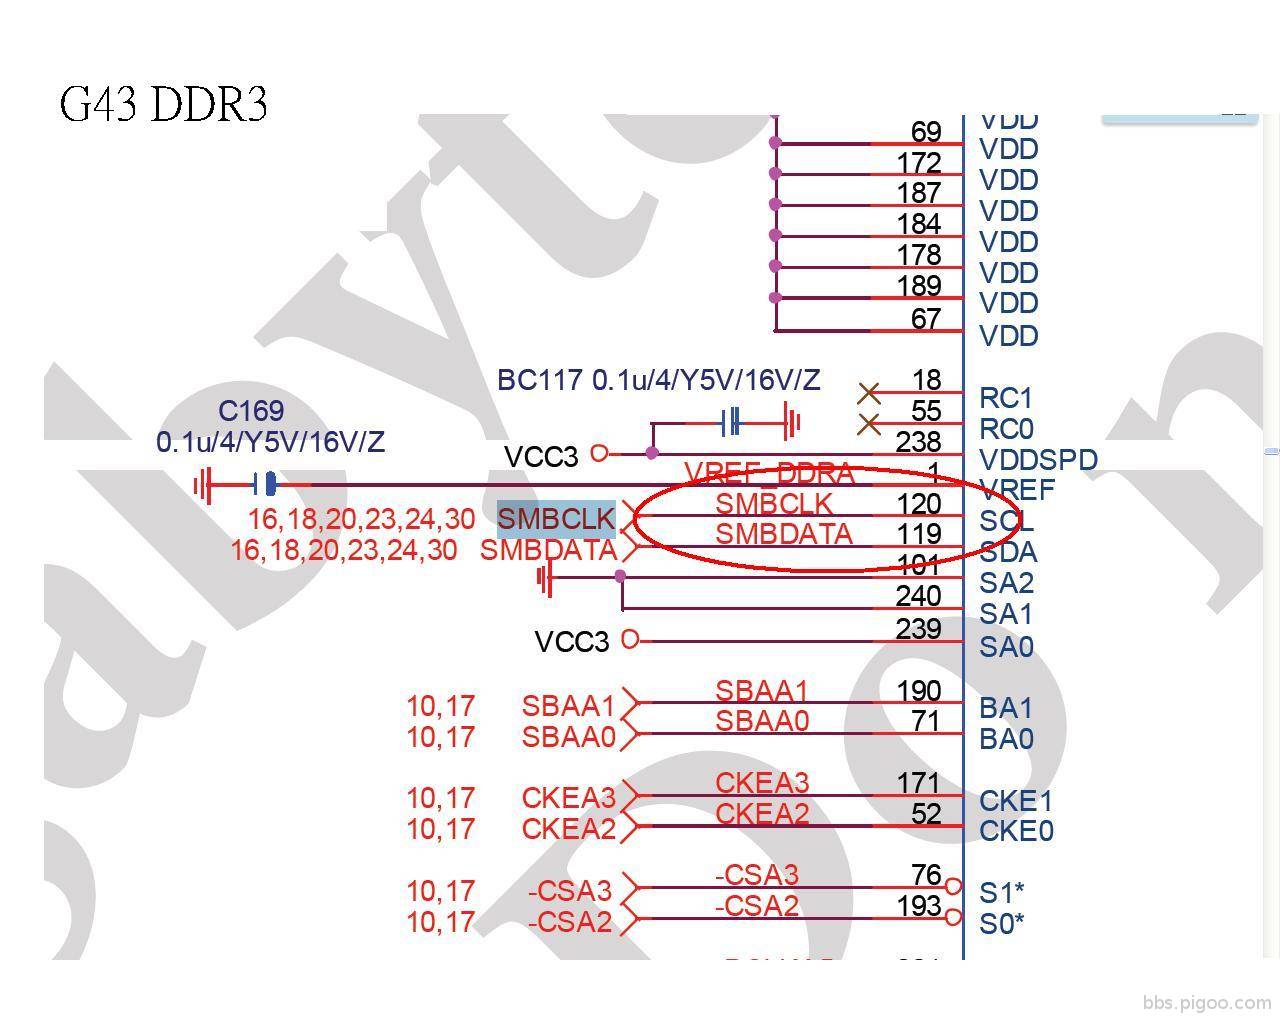 43-DDR3.JPG